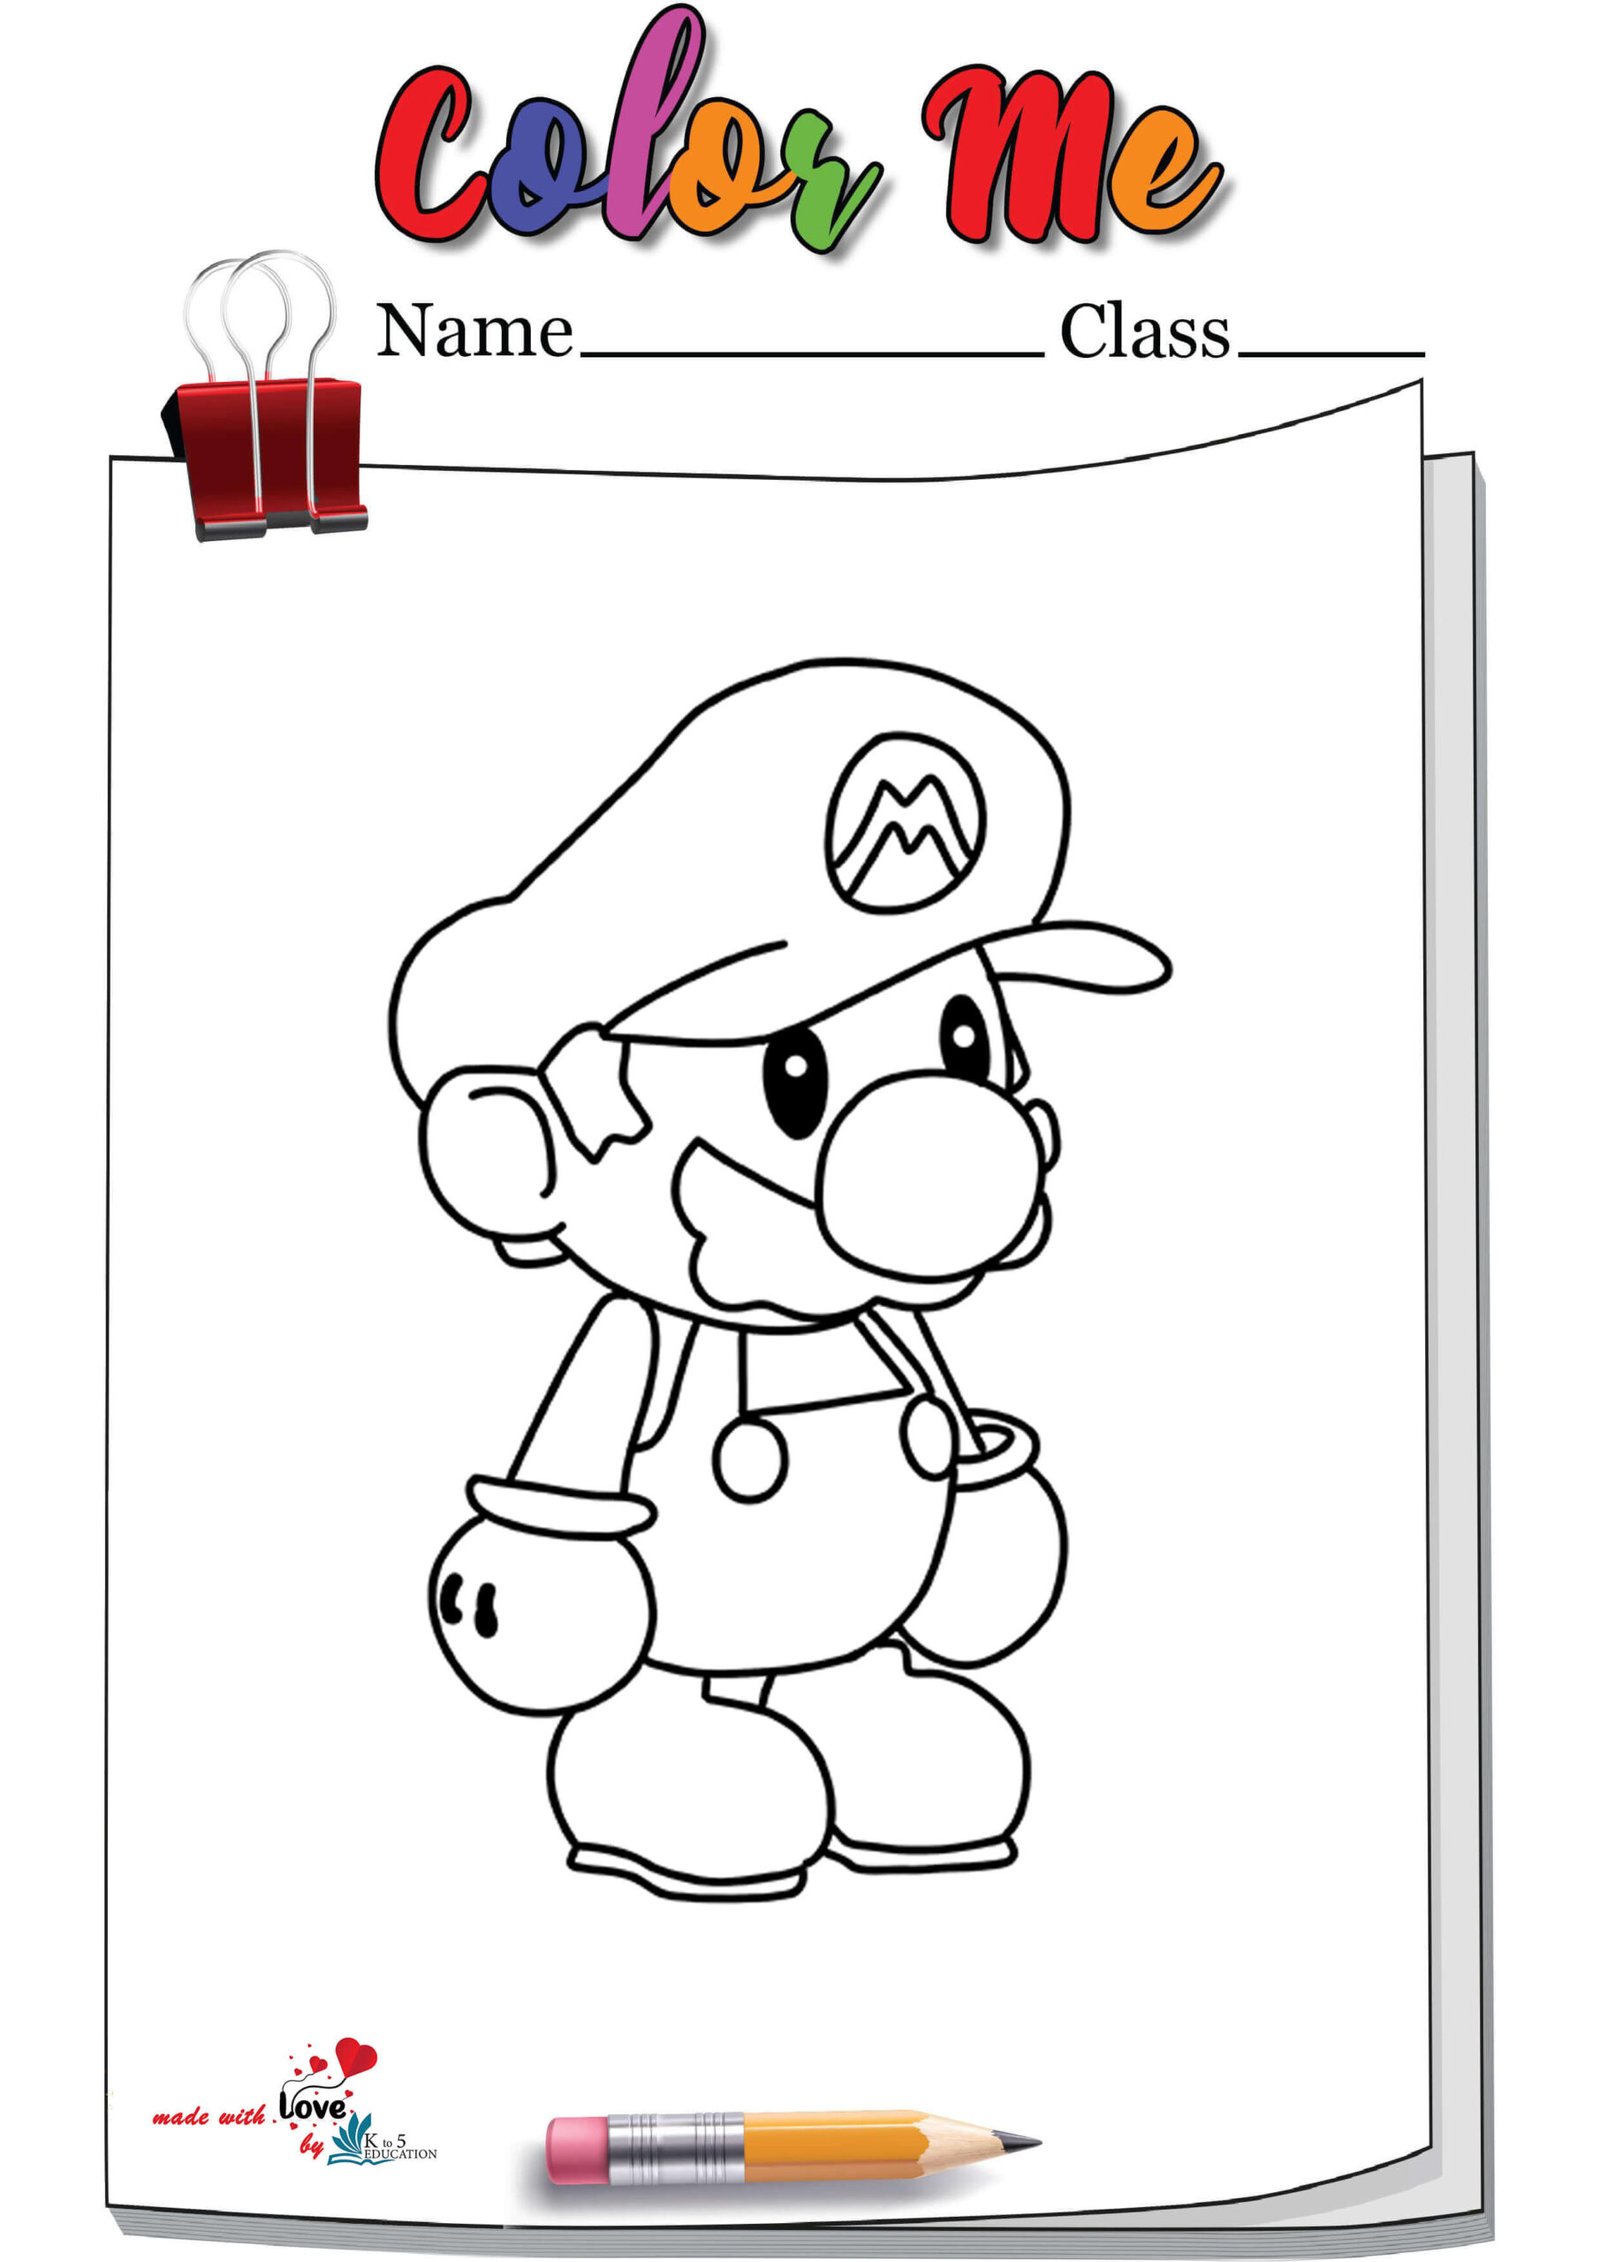 Paper Mario Coloring Page